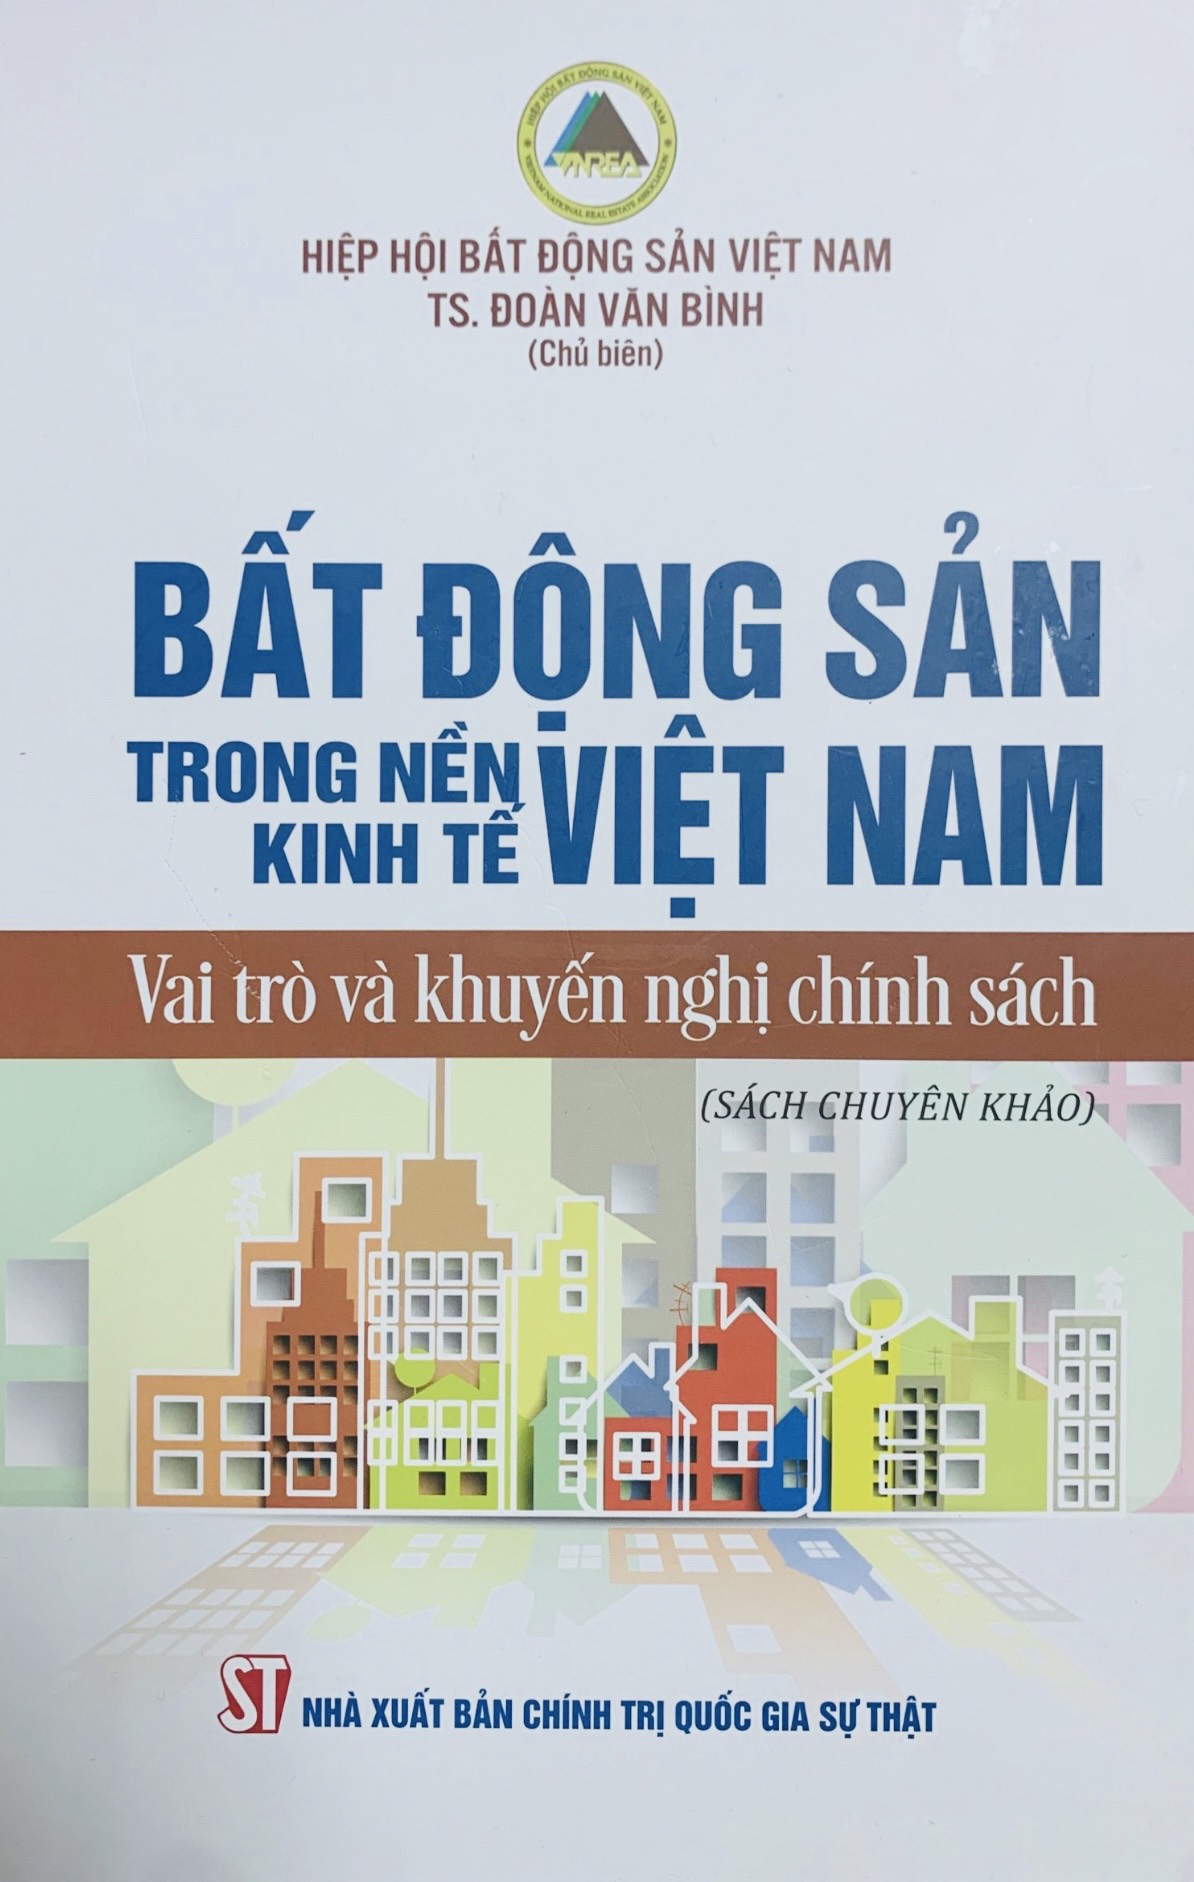 Bất động sản trong nền kinh tế Việt Nam: Vai trò và khuyến nghị chính sách (Sách chuyên khảo)